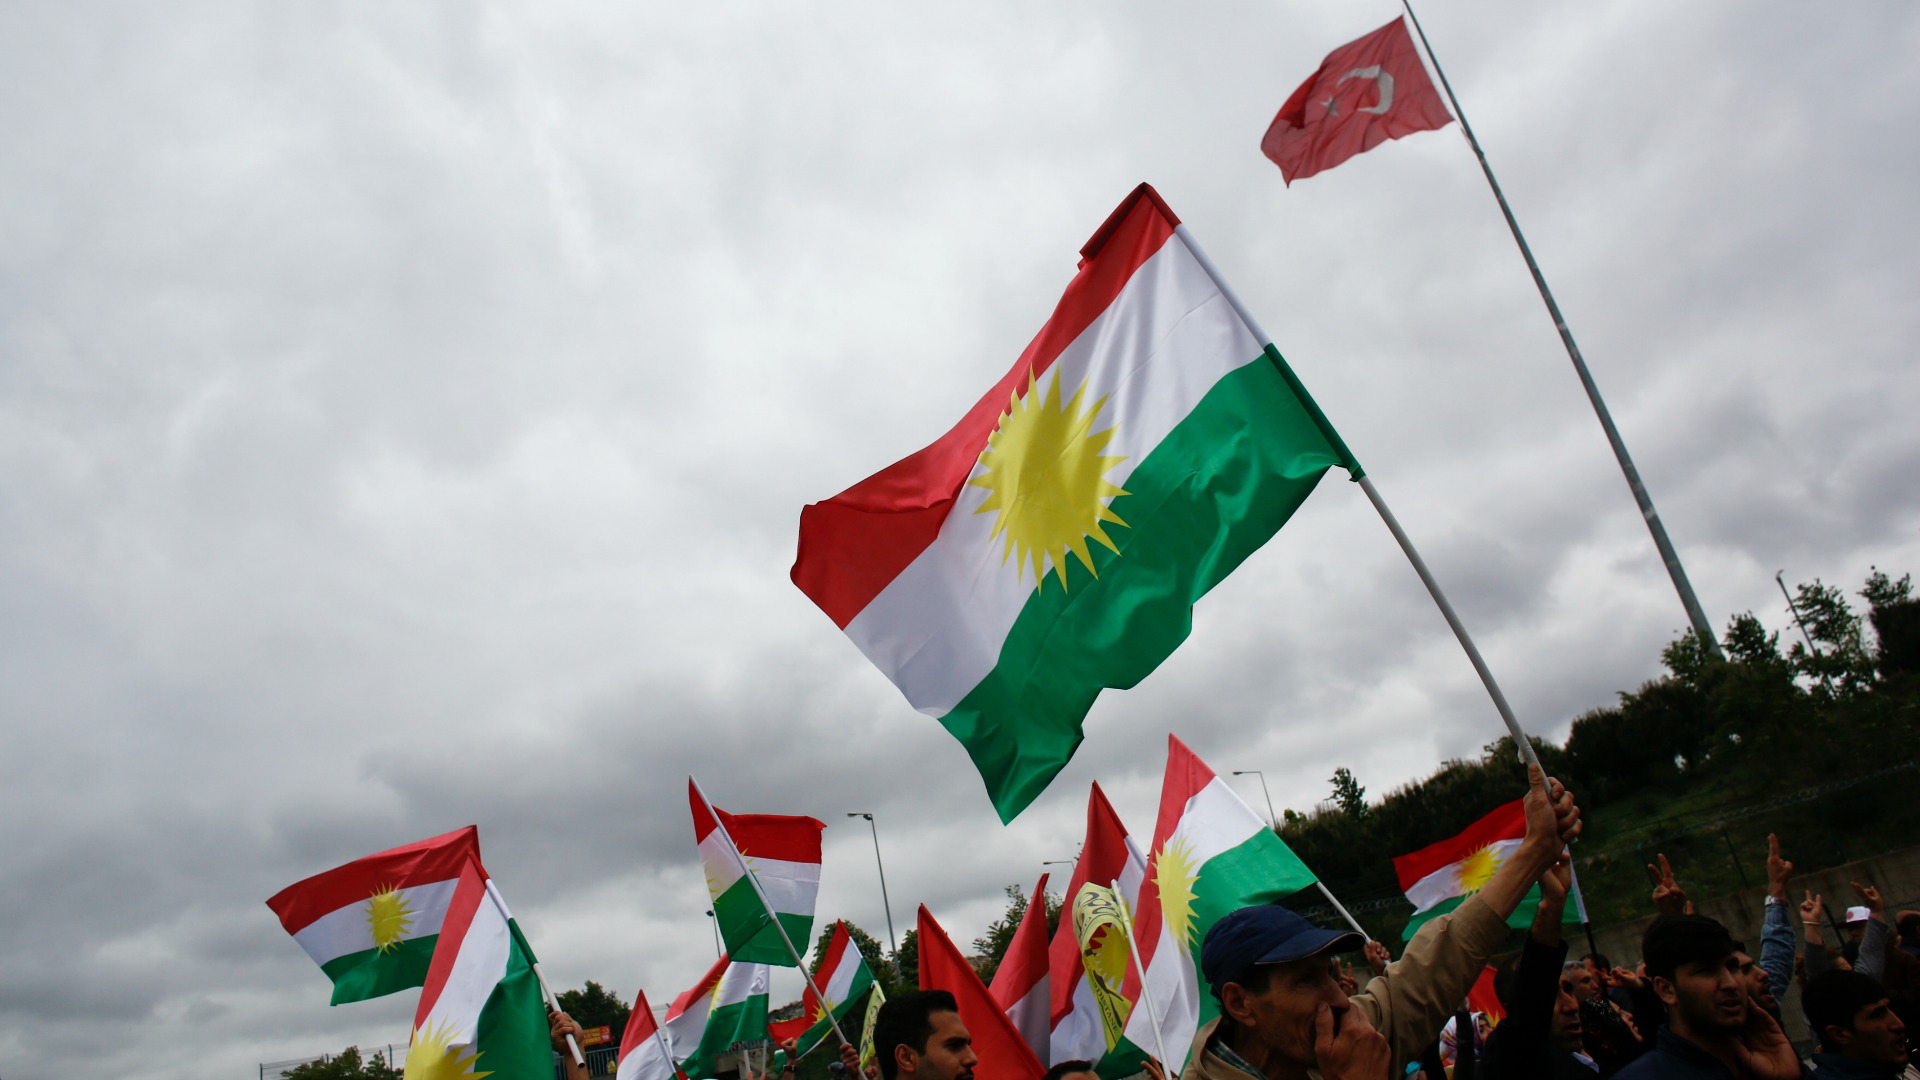 La ONU acusa a Turquía de "graves violaciones" de derechos humanos en la región kurda